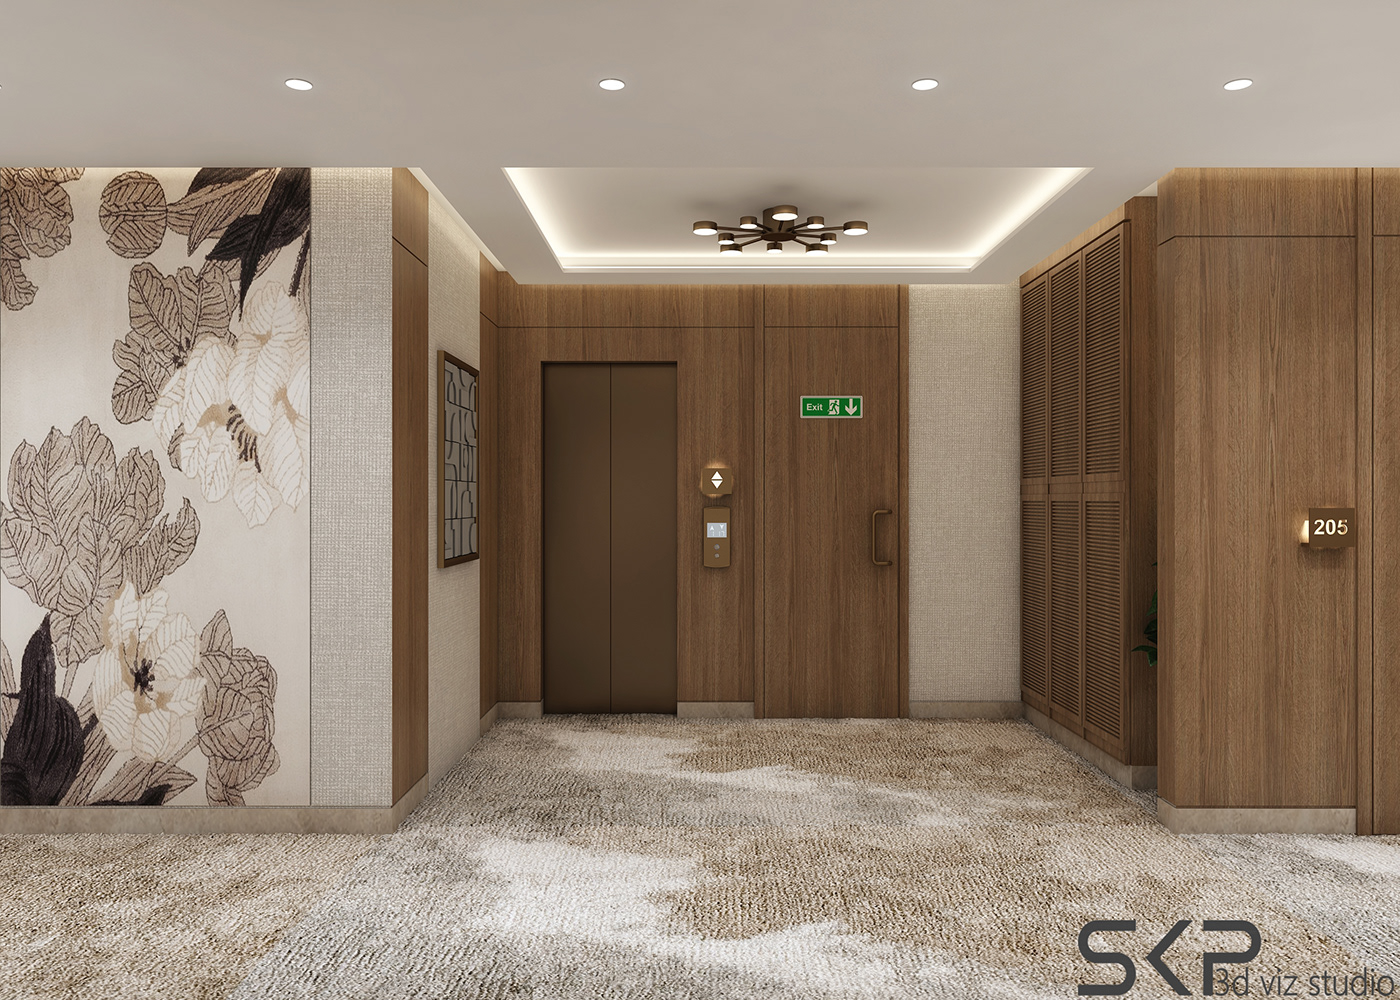 SITE LOCATED IN HALDWANI interior design  architecture Render visualization 3D modern 3ds max archviz CGI